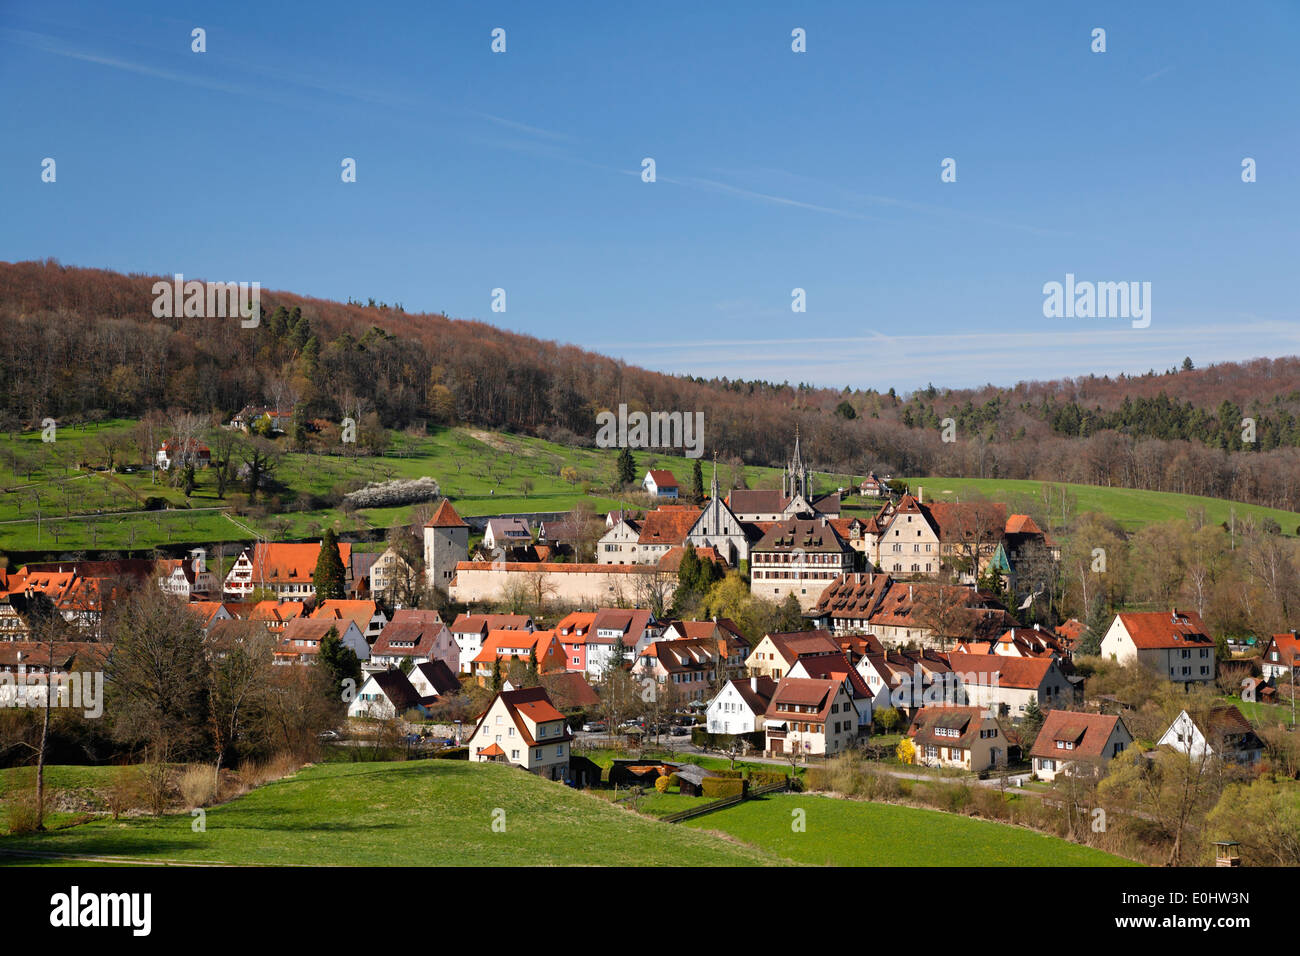 Deutschland, Baden-Württemberg, Kloster Bebenhausen, Dorf, Häuser Stock Photo